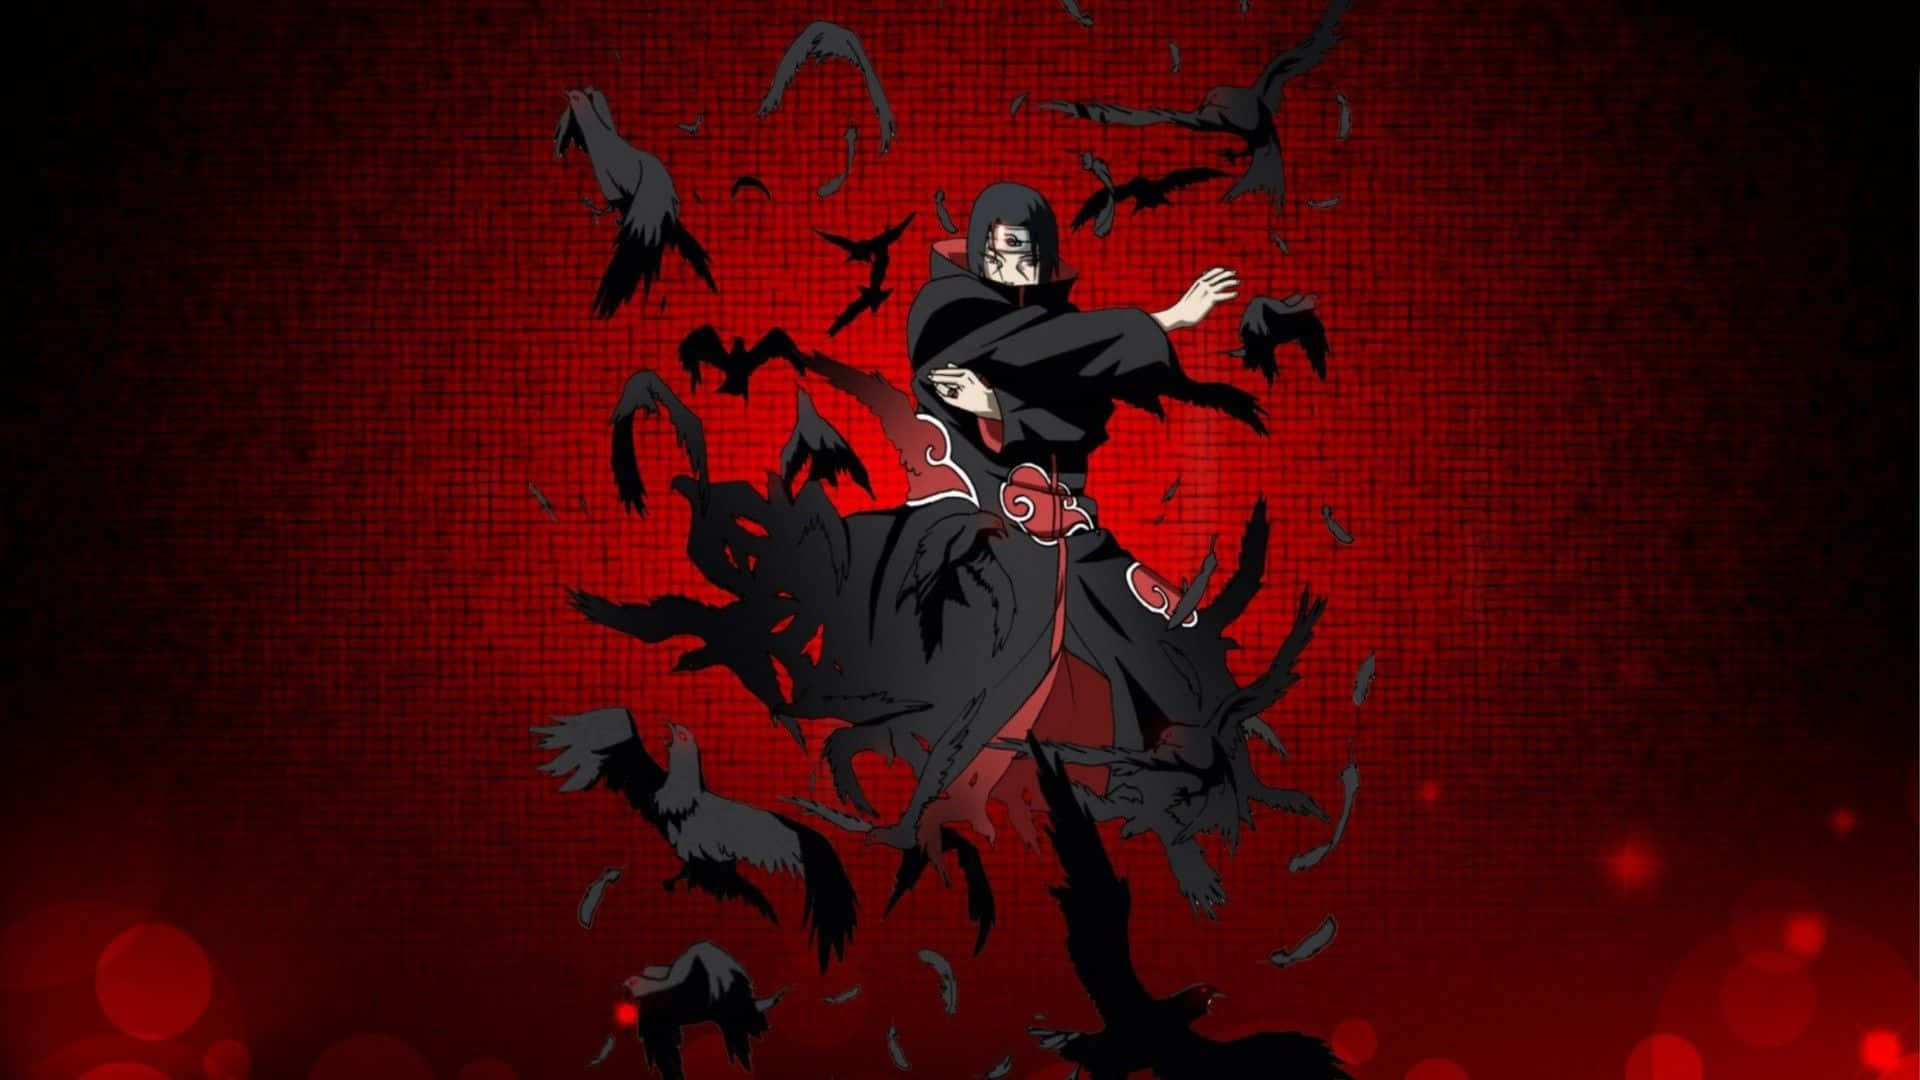 Einschwarzer Und Roter Anime-charakter Mit Einem Schwert. Wallpaper